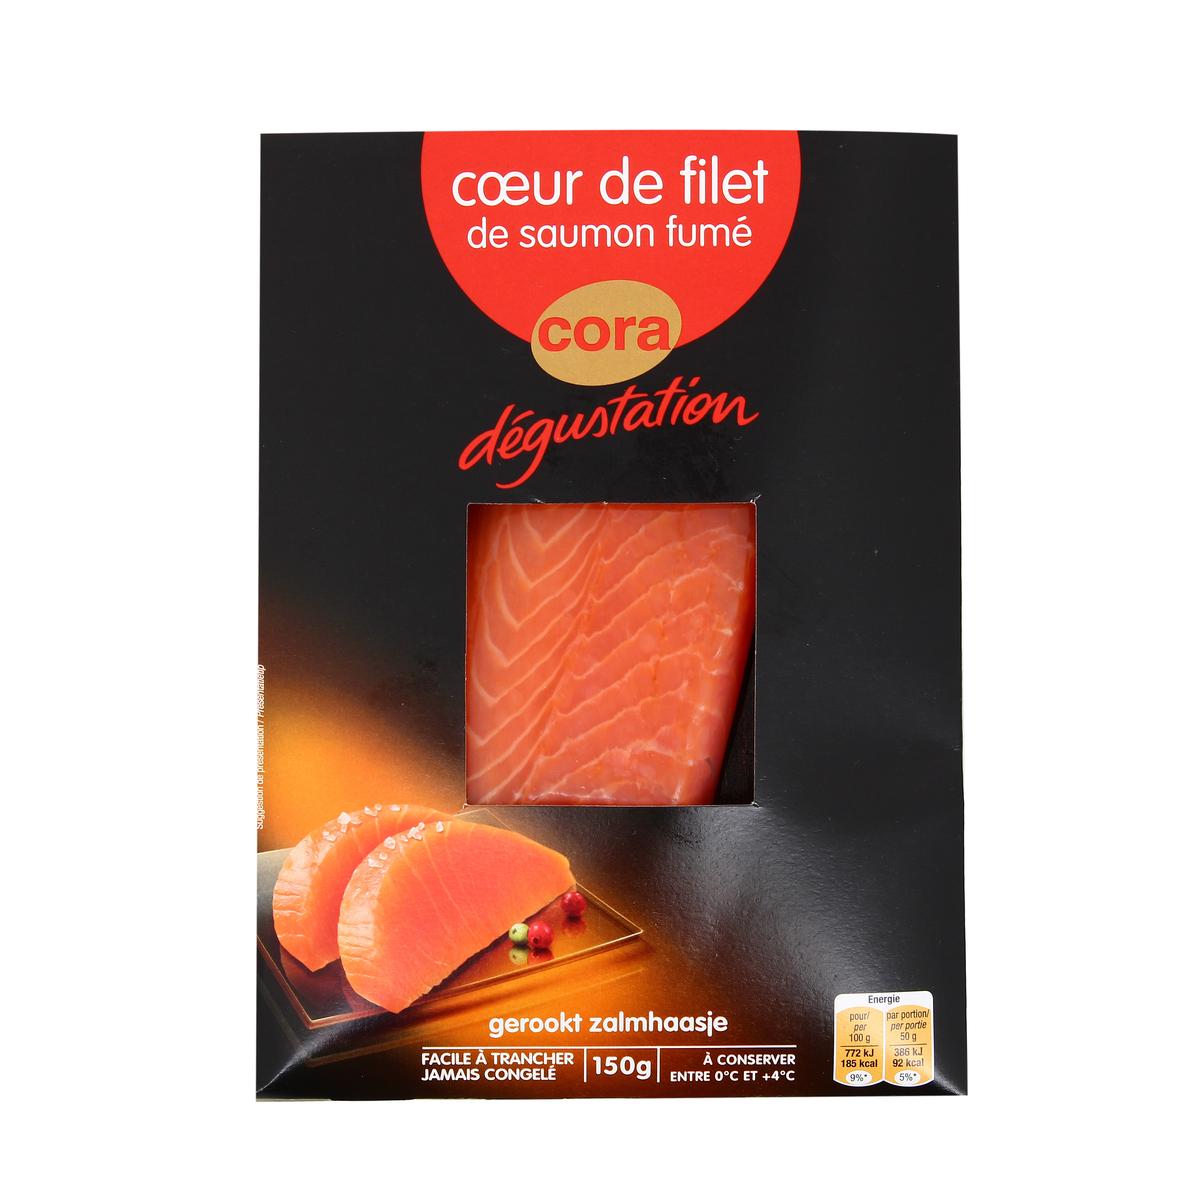 Achat Vente Cora Degustation Coeur De Filet De Saumon Fume 150g